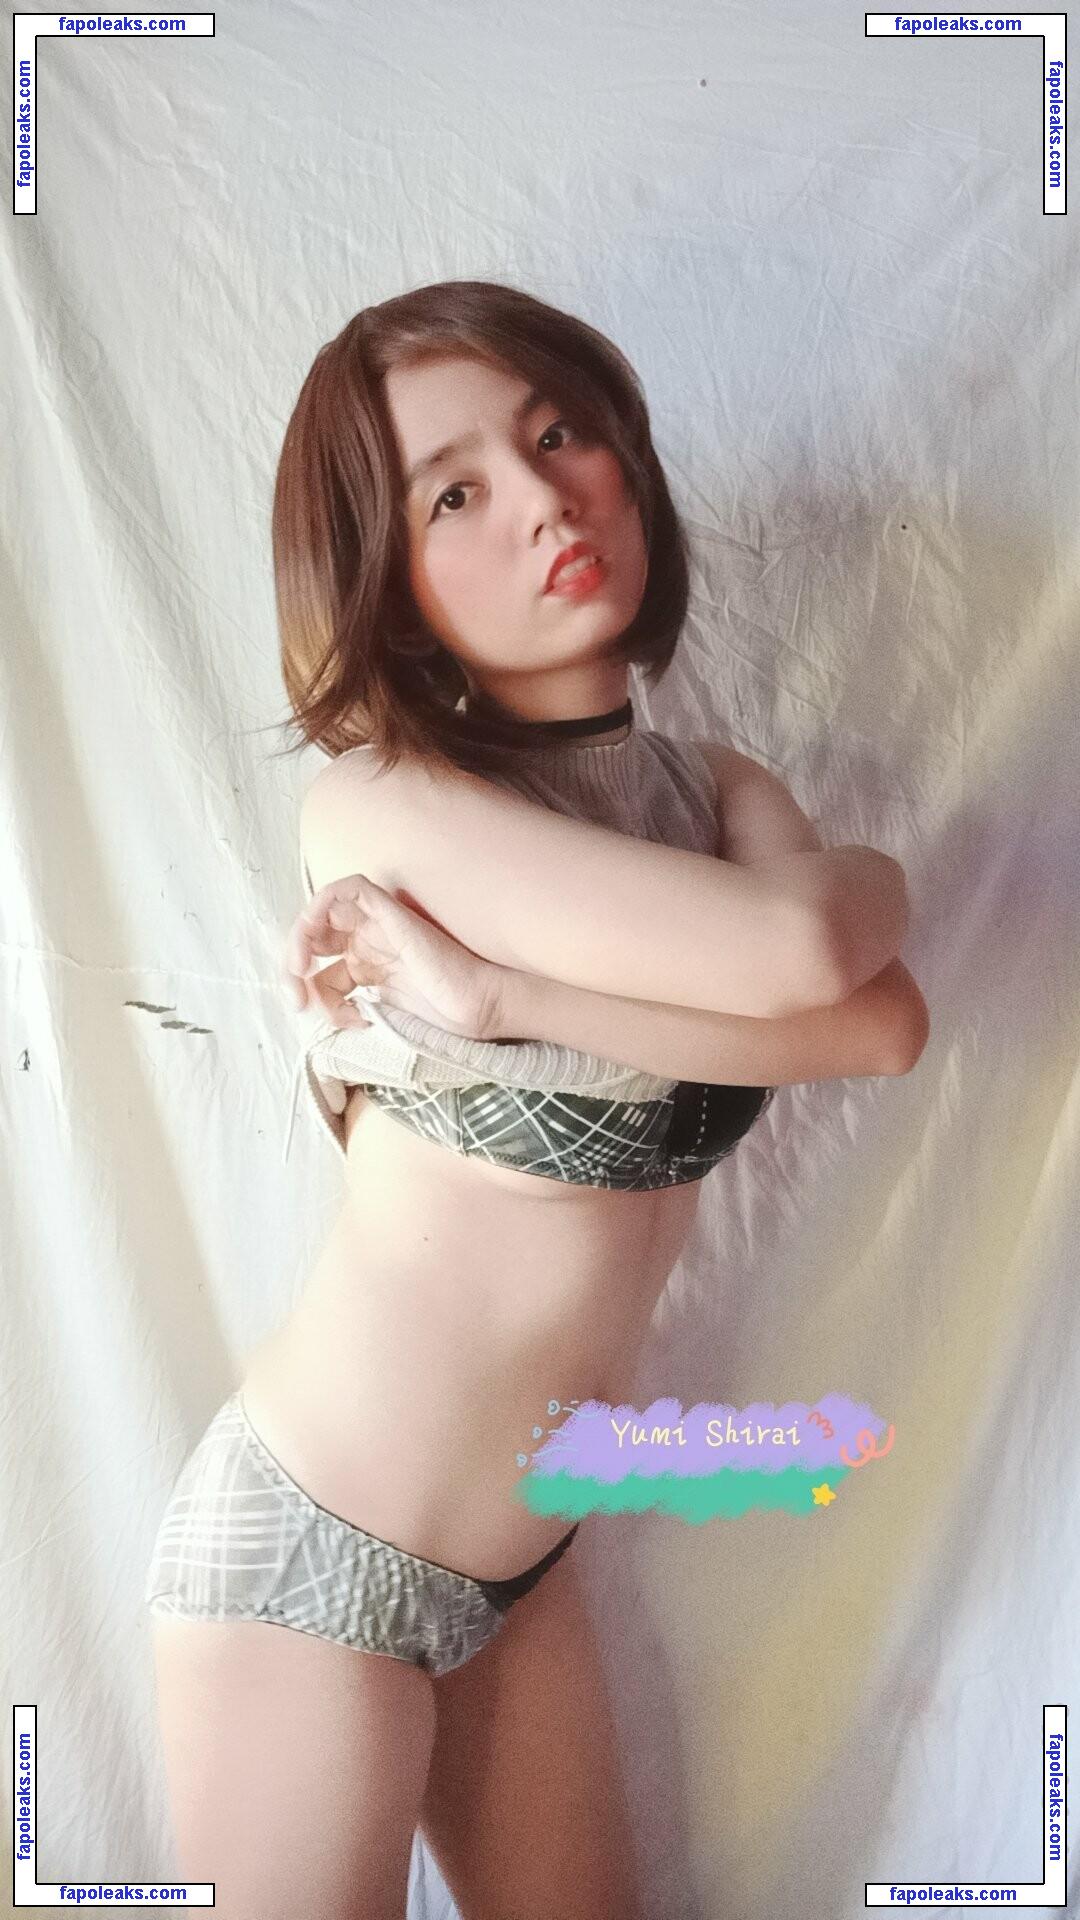 Mayumi / Yumi Shirai / jumayumin1 / lewdgirlfriend / yumi_shiraimu nude photo #0017 from OnlyFans